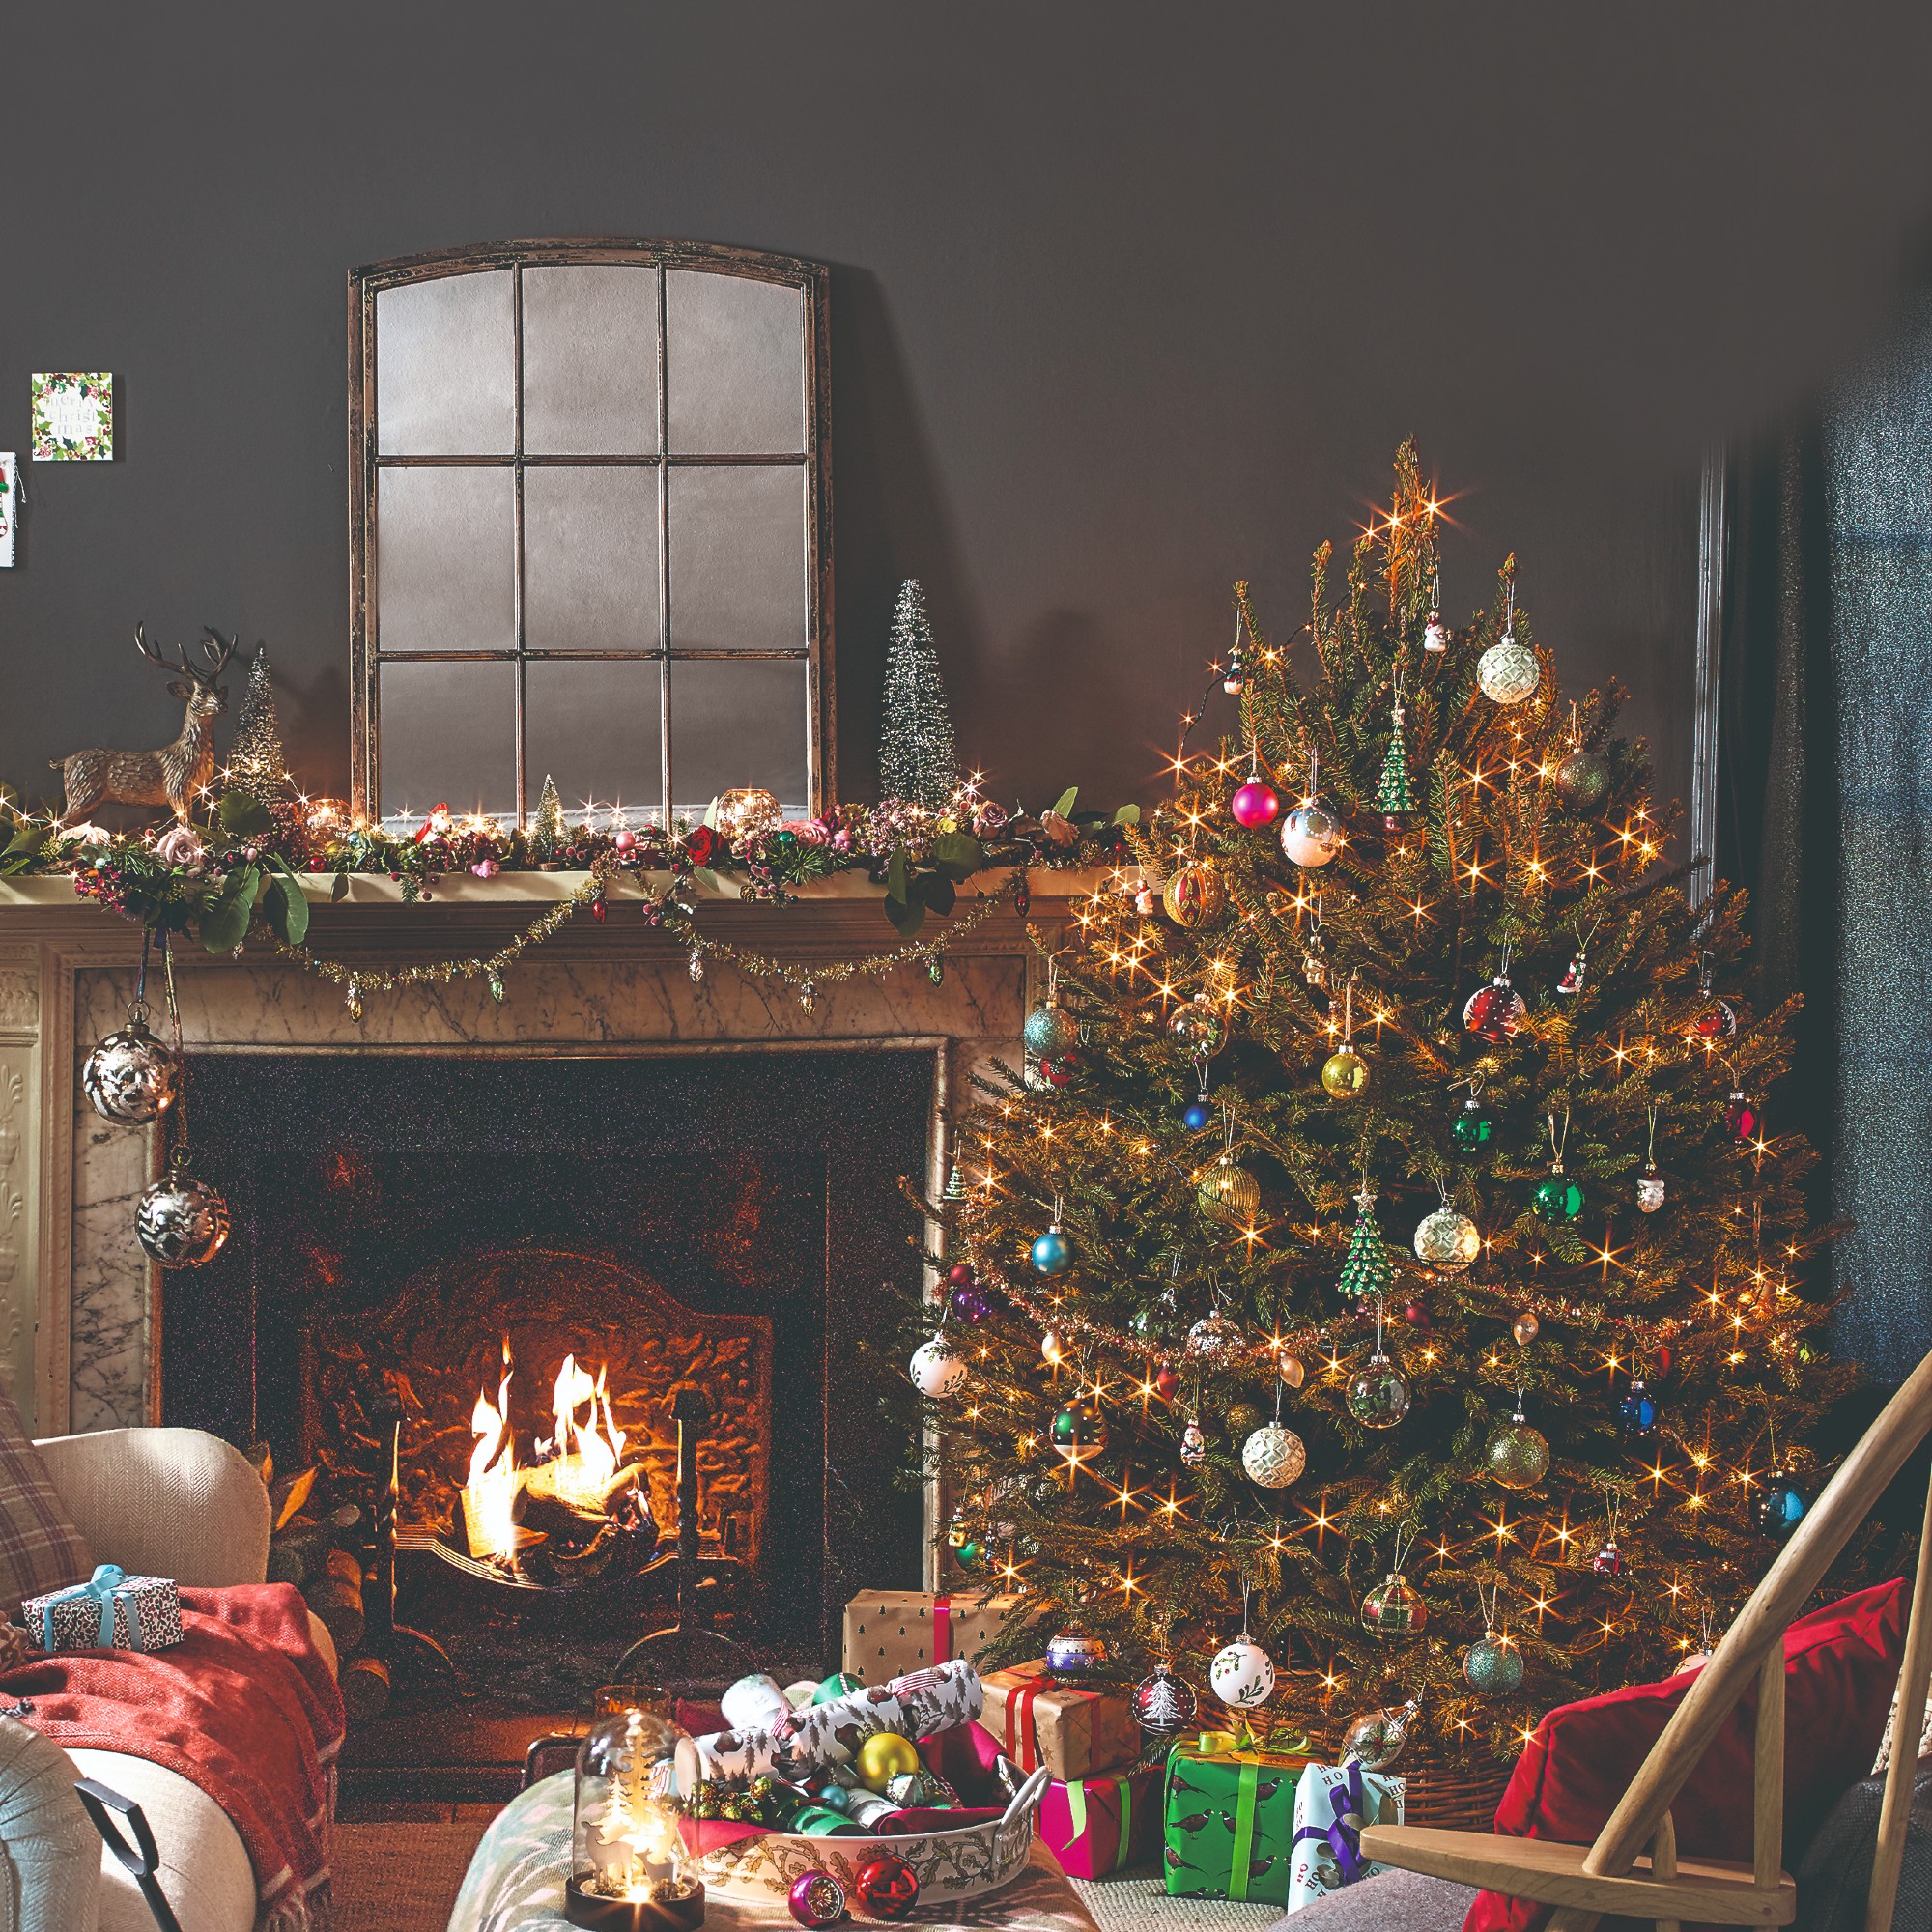 Make your life easier and save energy this Christmas…